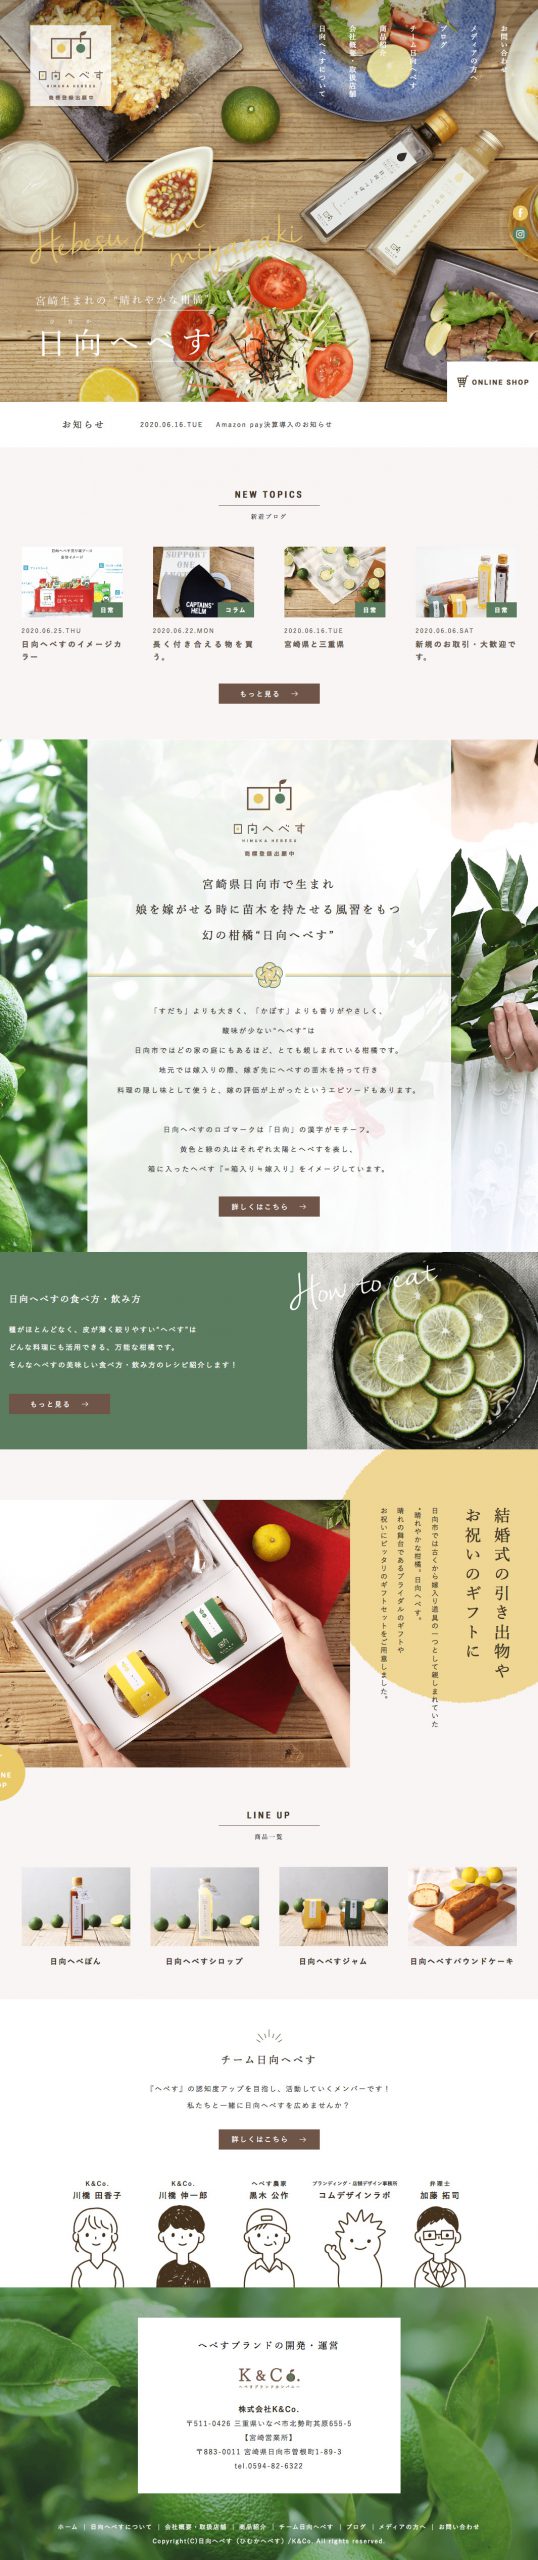 食品・飲料 ホームページ制作 WEBデザイン参考ギャラリー 日向へべす